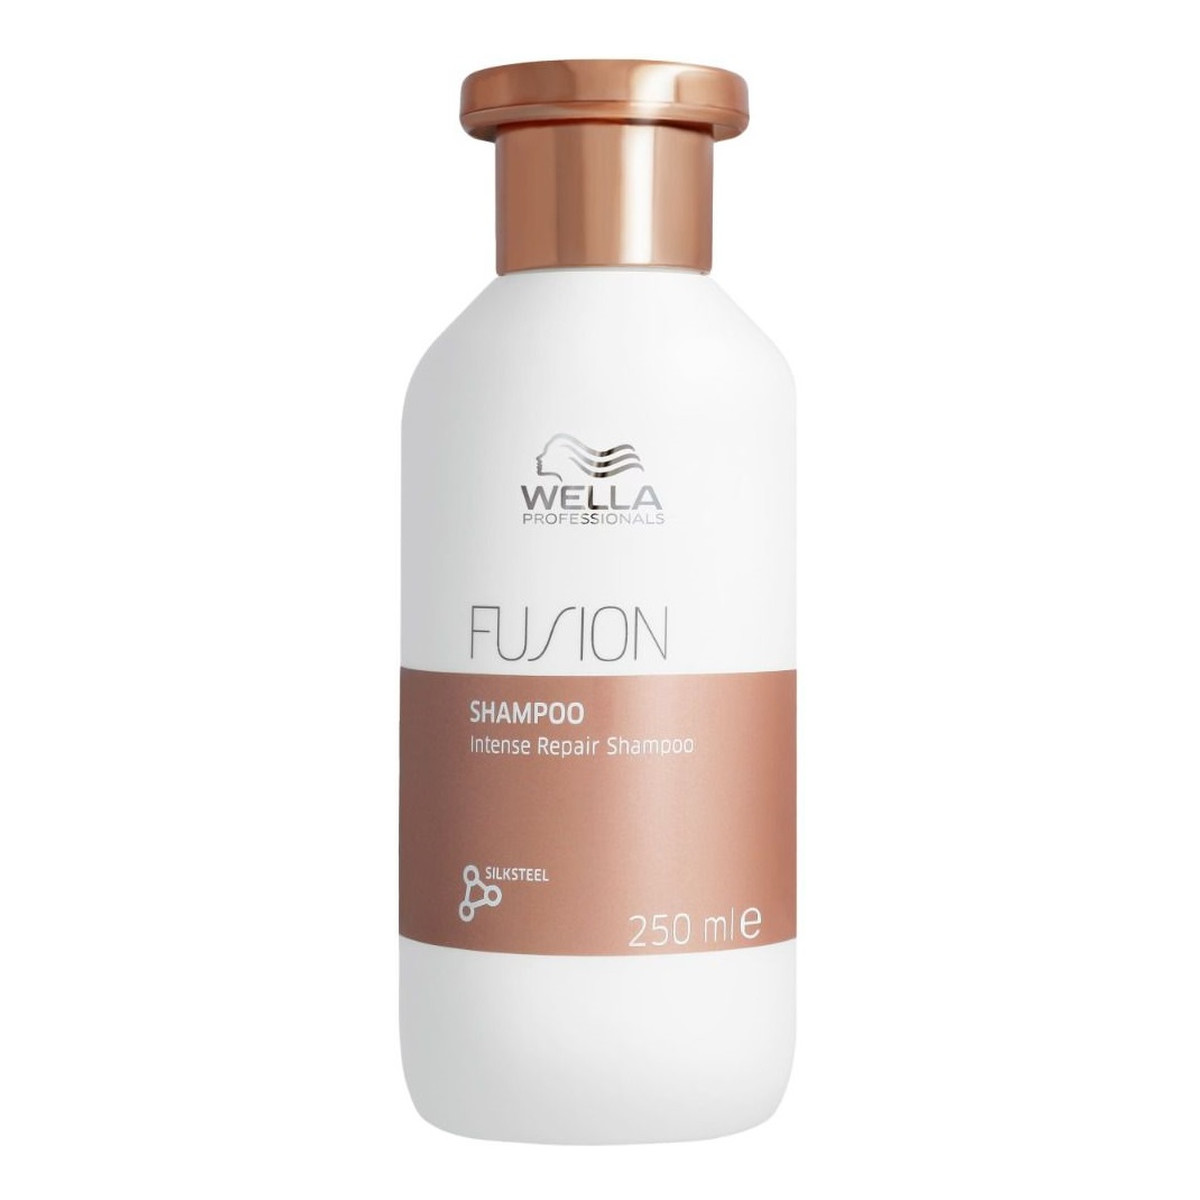 Wella Professionals Fusion intense repair shampoo szampon intensywnie regenerujący do włosów 250ml